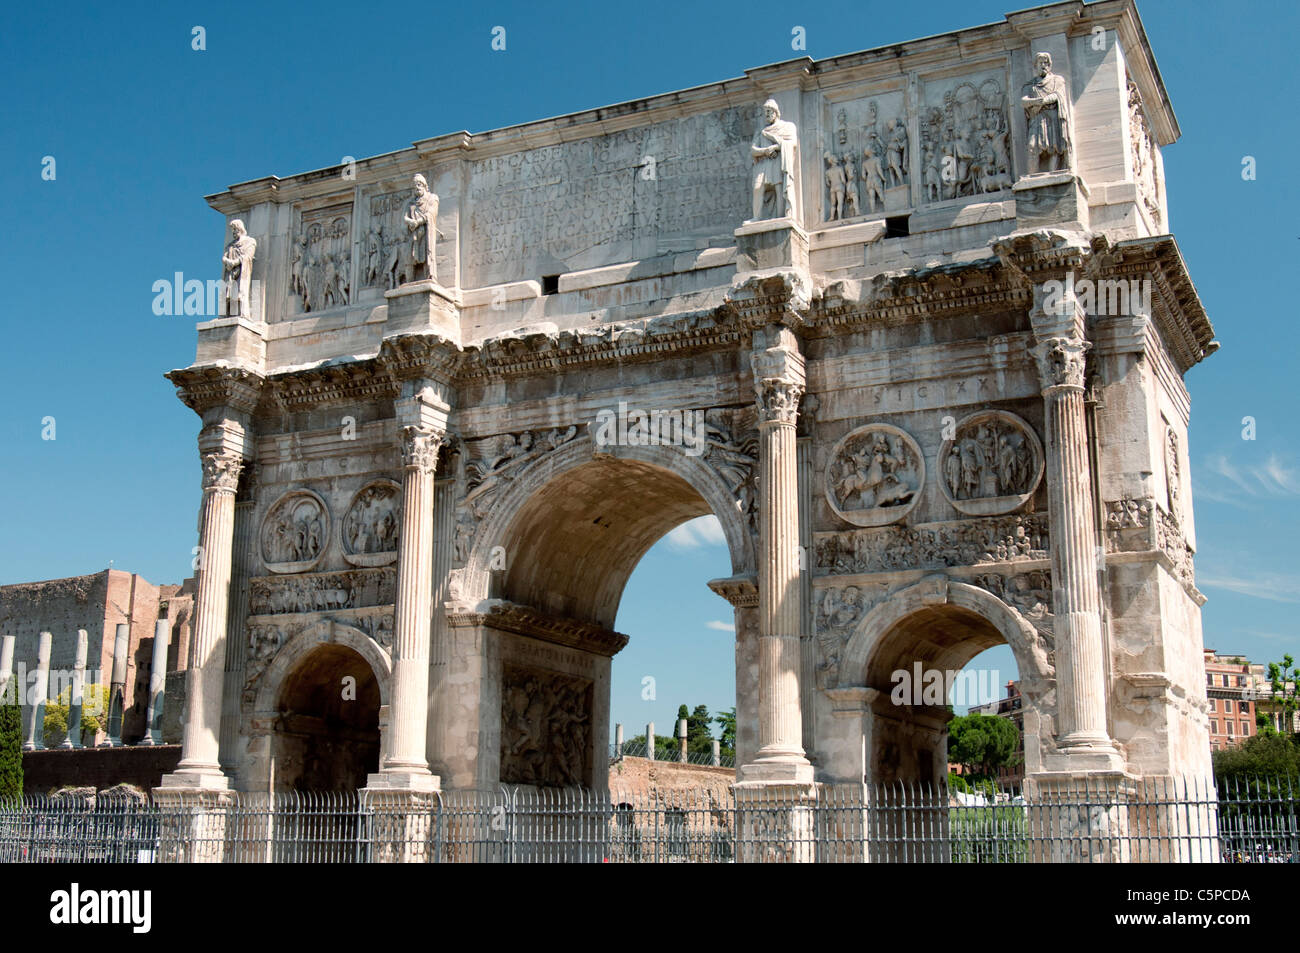 Arco di Costantino, a Roman triumphal arch honouring the Emperor Constantine, near the Colosseum in Rome. Stock Photo